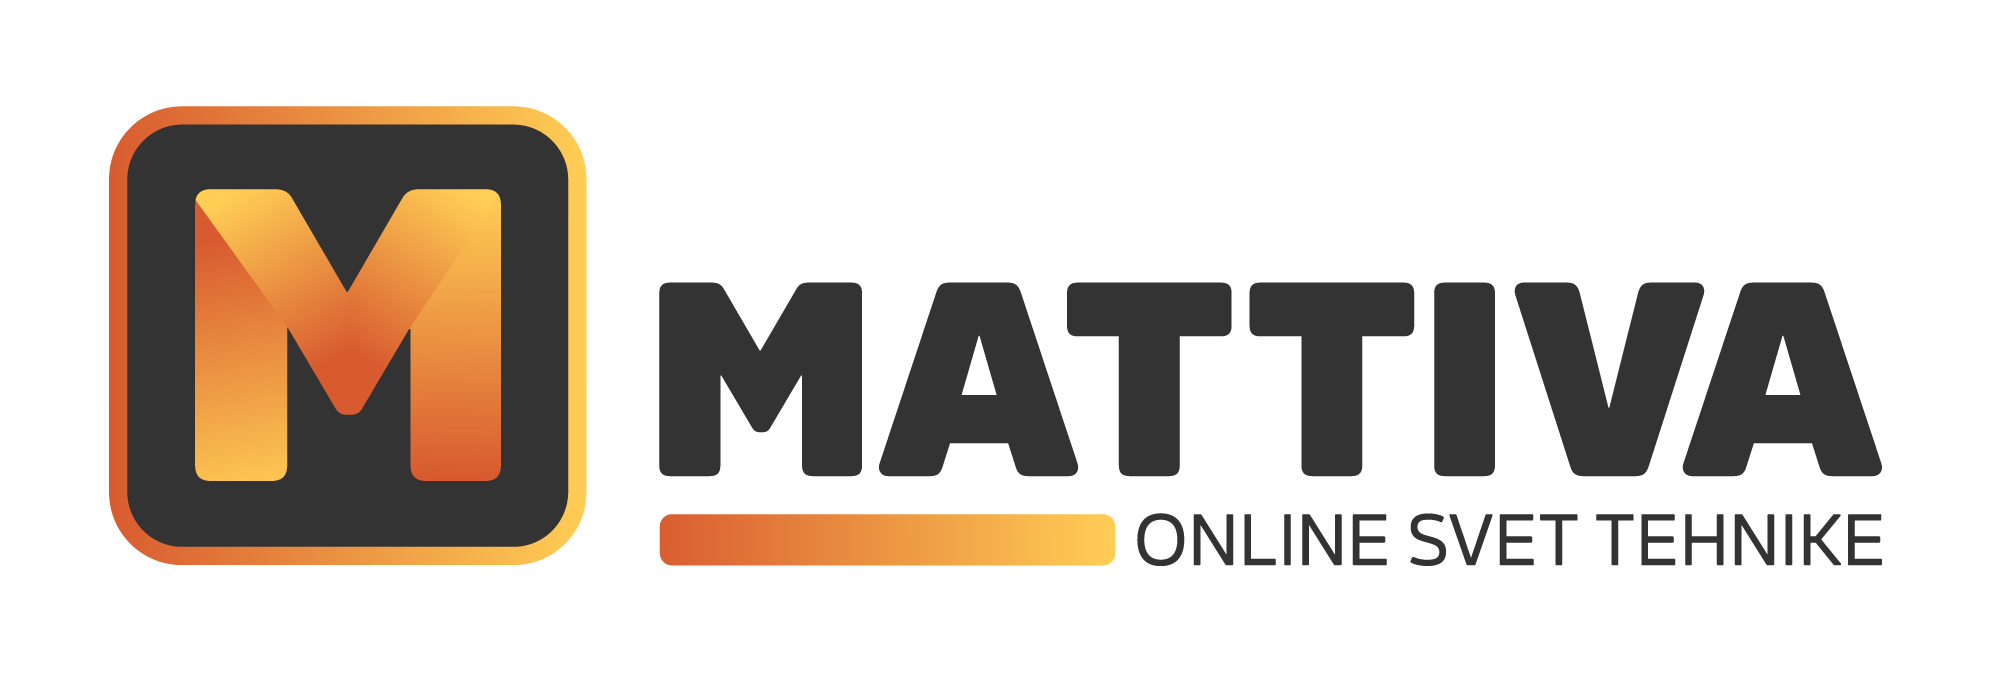 Mattiva - online svet tehnike